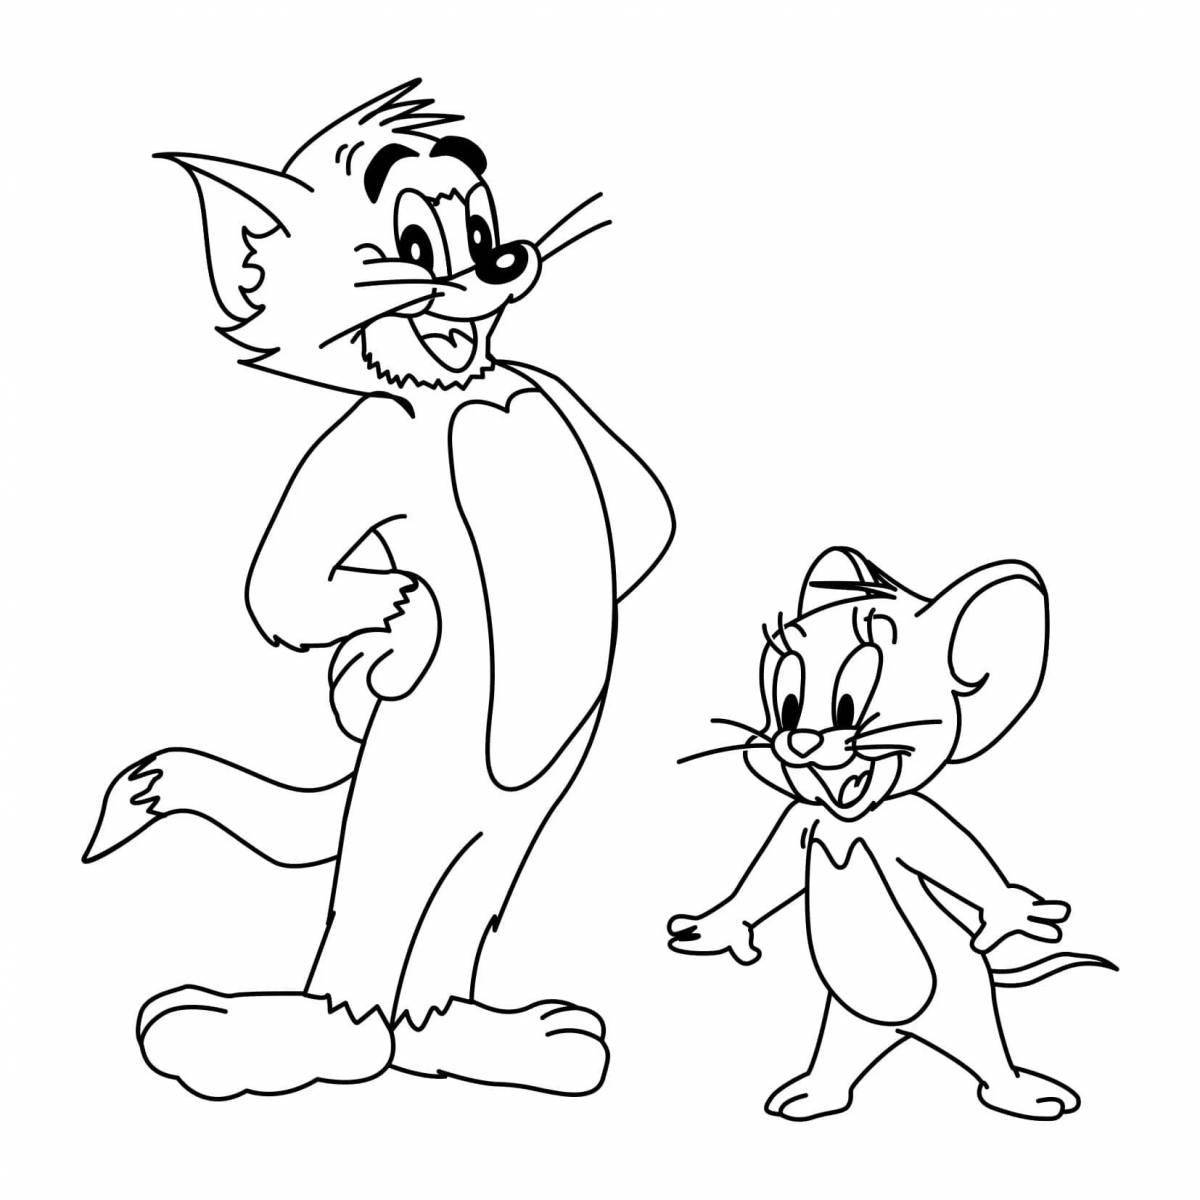 Игра Раскраска Тома и Джерри - Играть Онлайн! Бесплатно